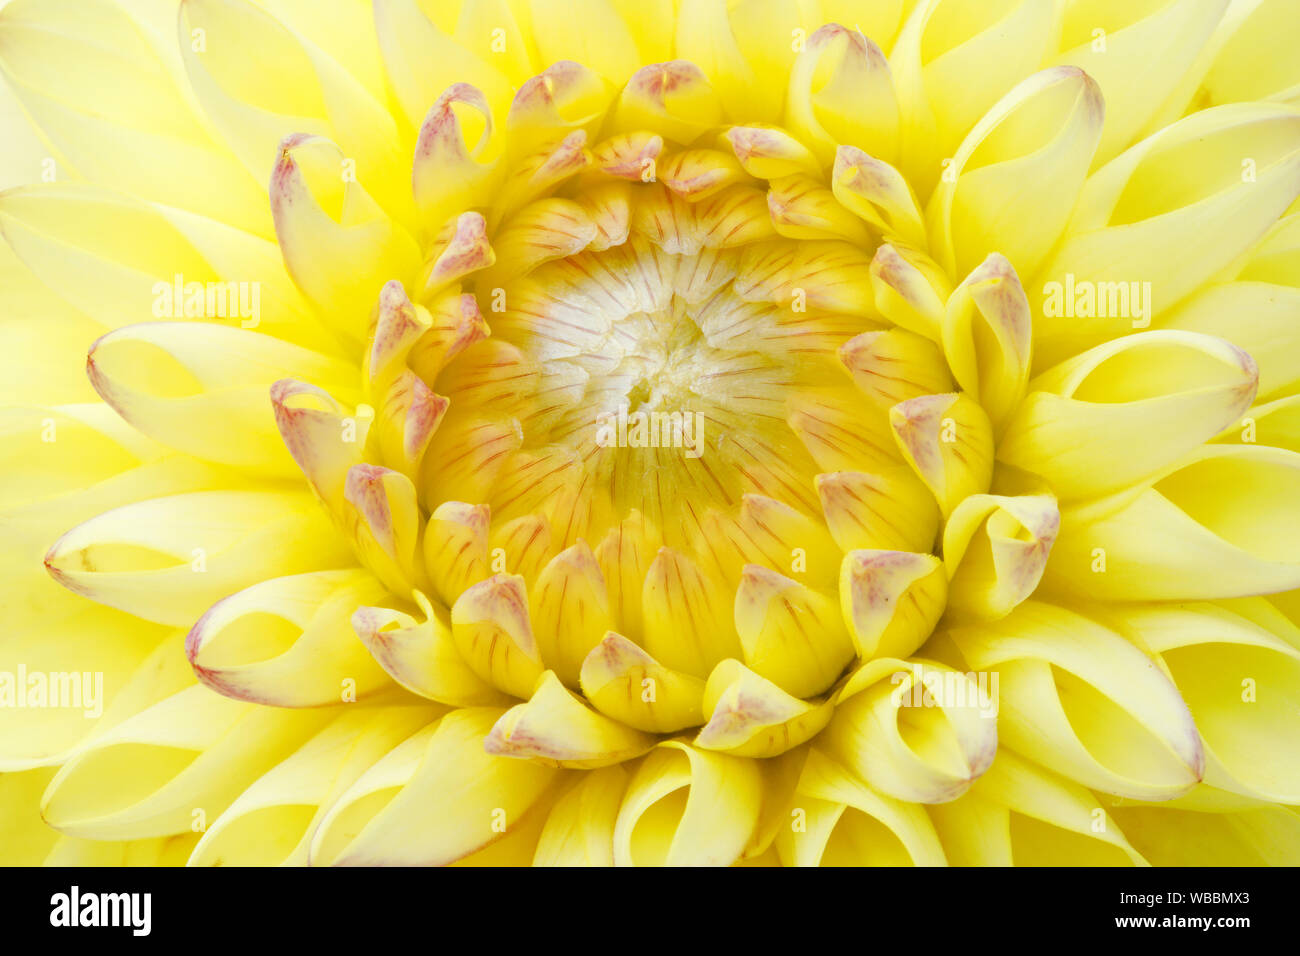 Dahlia. Close-up of yellow flower. Switzerland Stock Photo